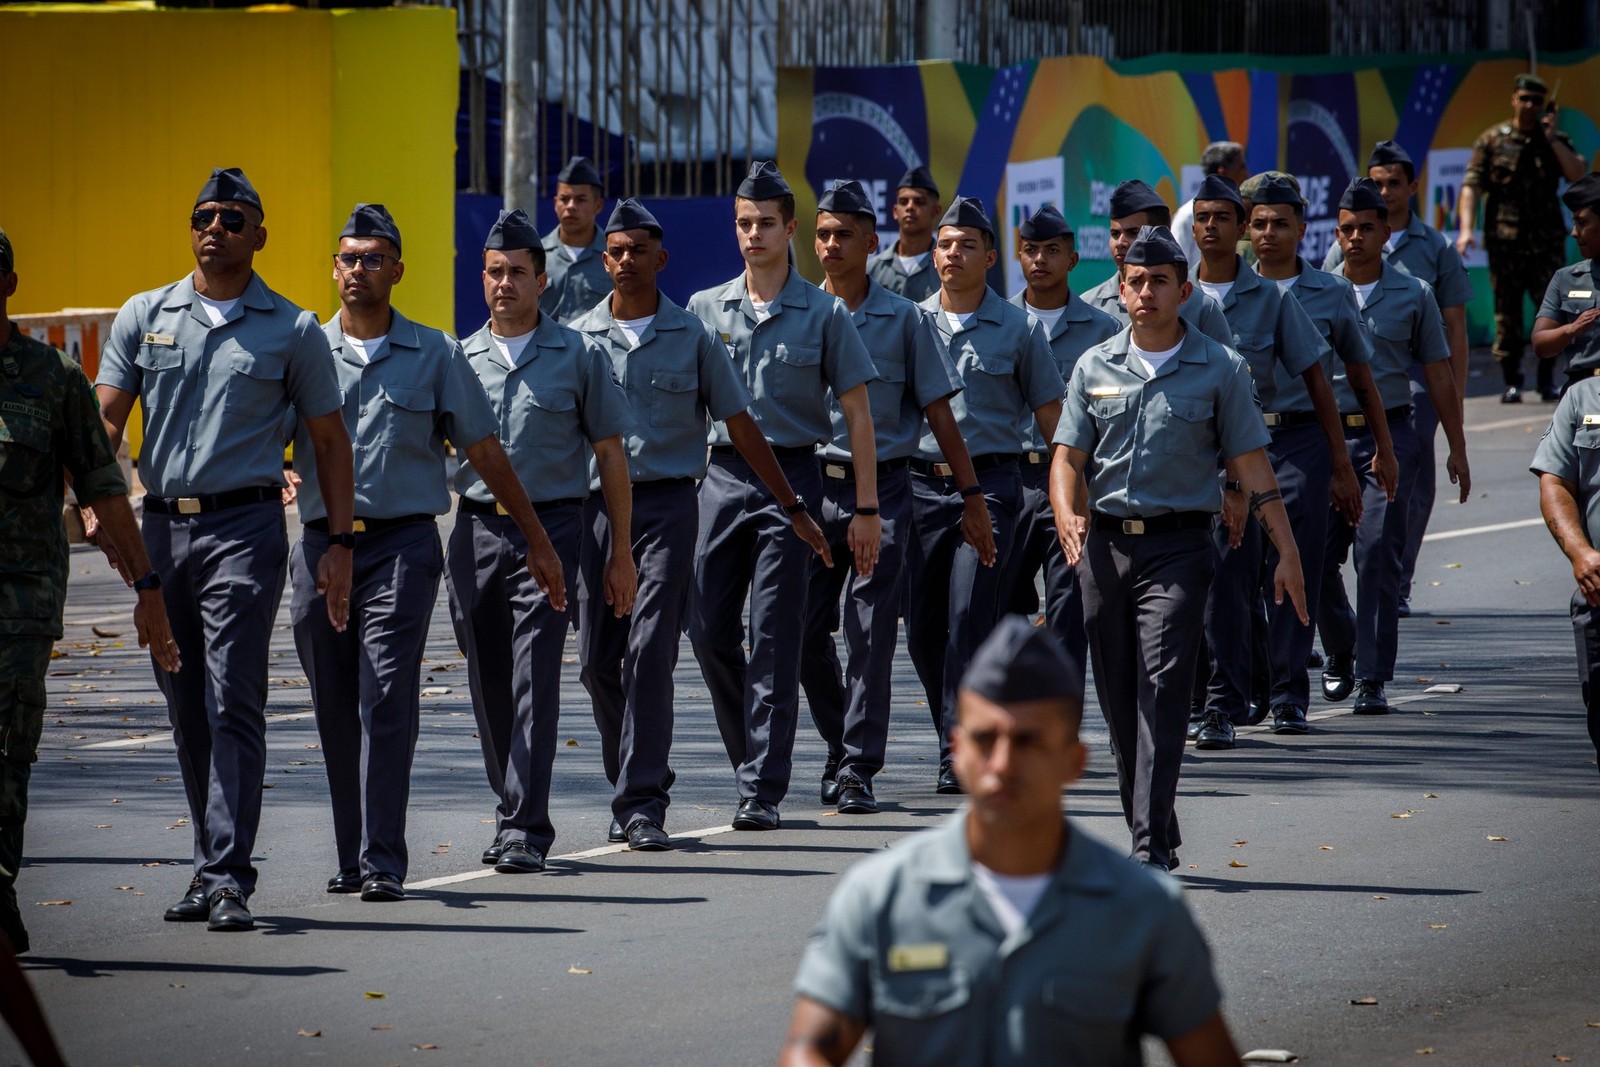 7 de Setembro: militares ensaiam para desfile na Esplanada dos Ministérios, em Brasília. — Foto: Brenno Carvalho/Agência O Globo